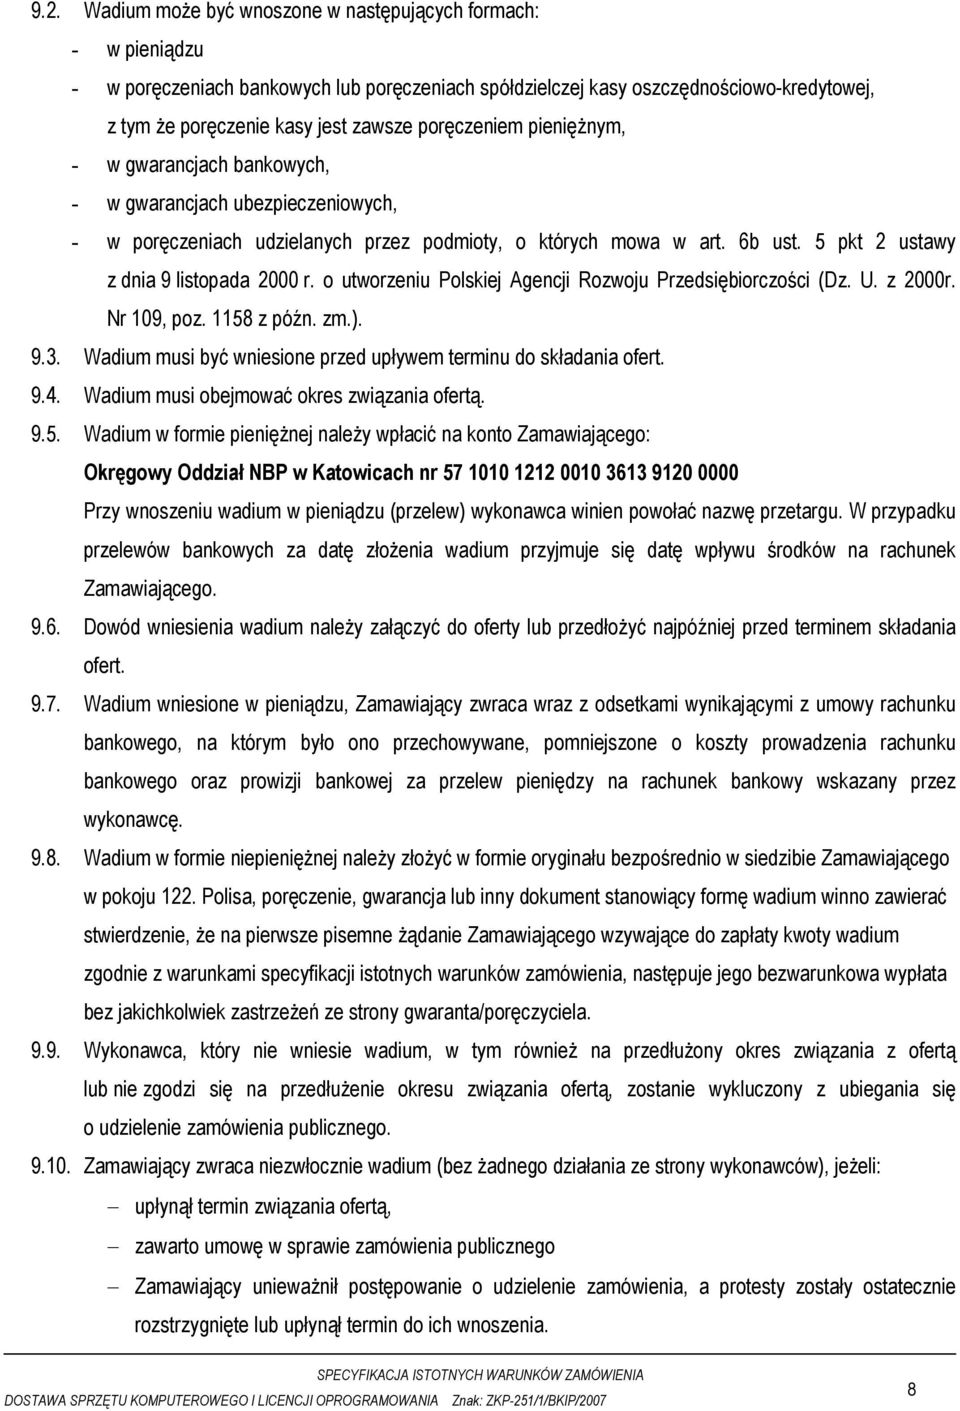 5 pkt 2 ustawy z dnia 9 listopada 2000 r. o utworzeniu Polskiej Agencji Rozwoju Przedsiębiorczości (Dz. U. z 2000r. Nr 109, poz. 1158 z późn. zm.). 9.3.